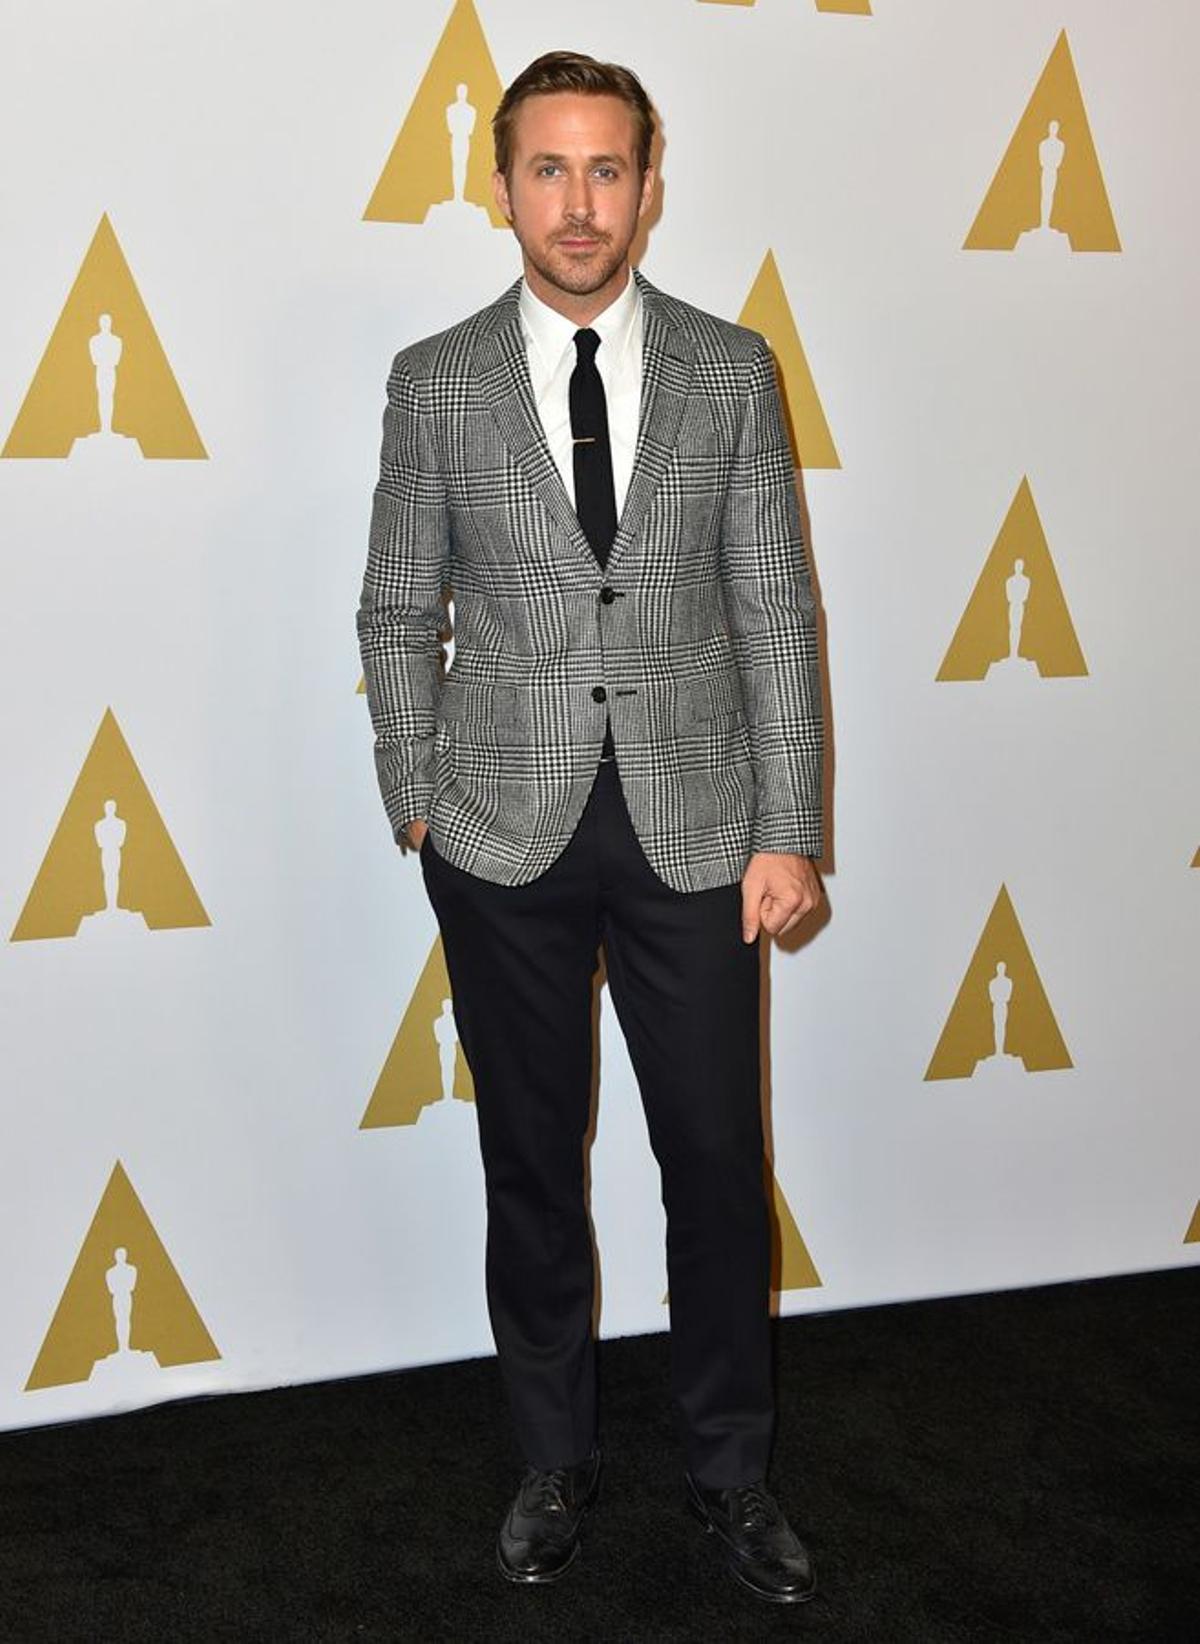 Almuerzo previo a los Oscar: Ryan Gosling